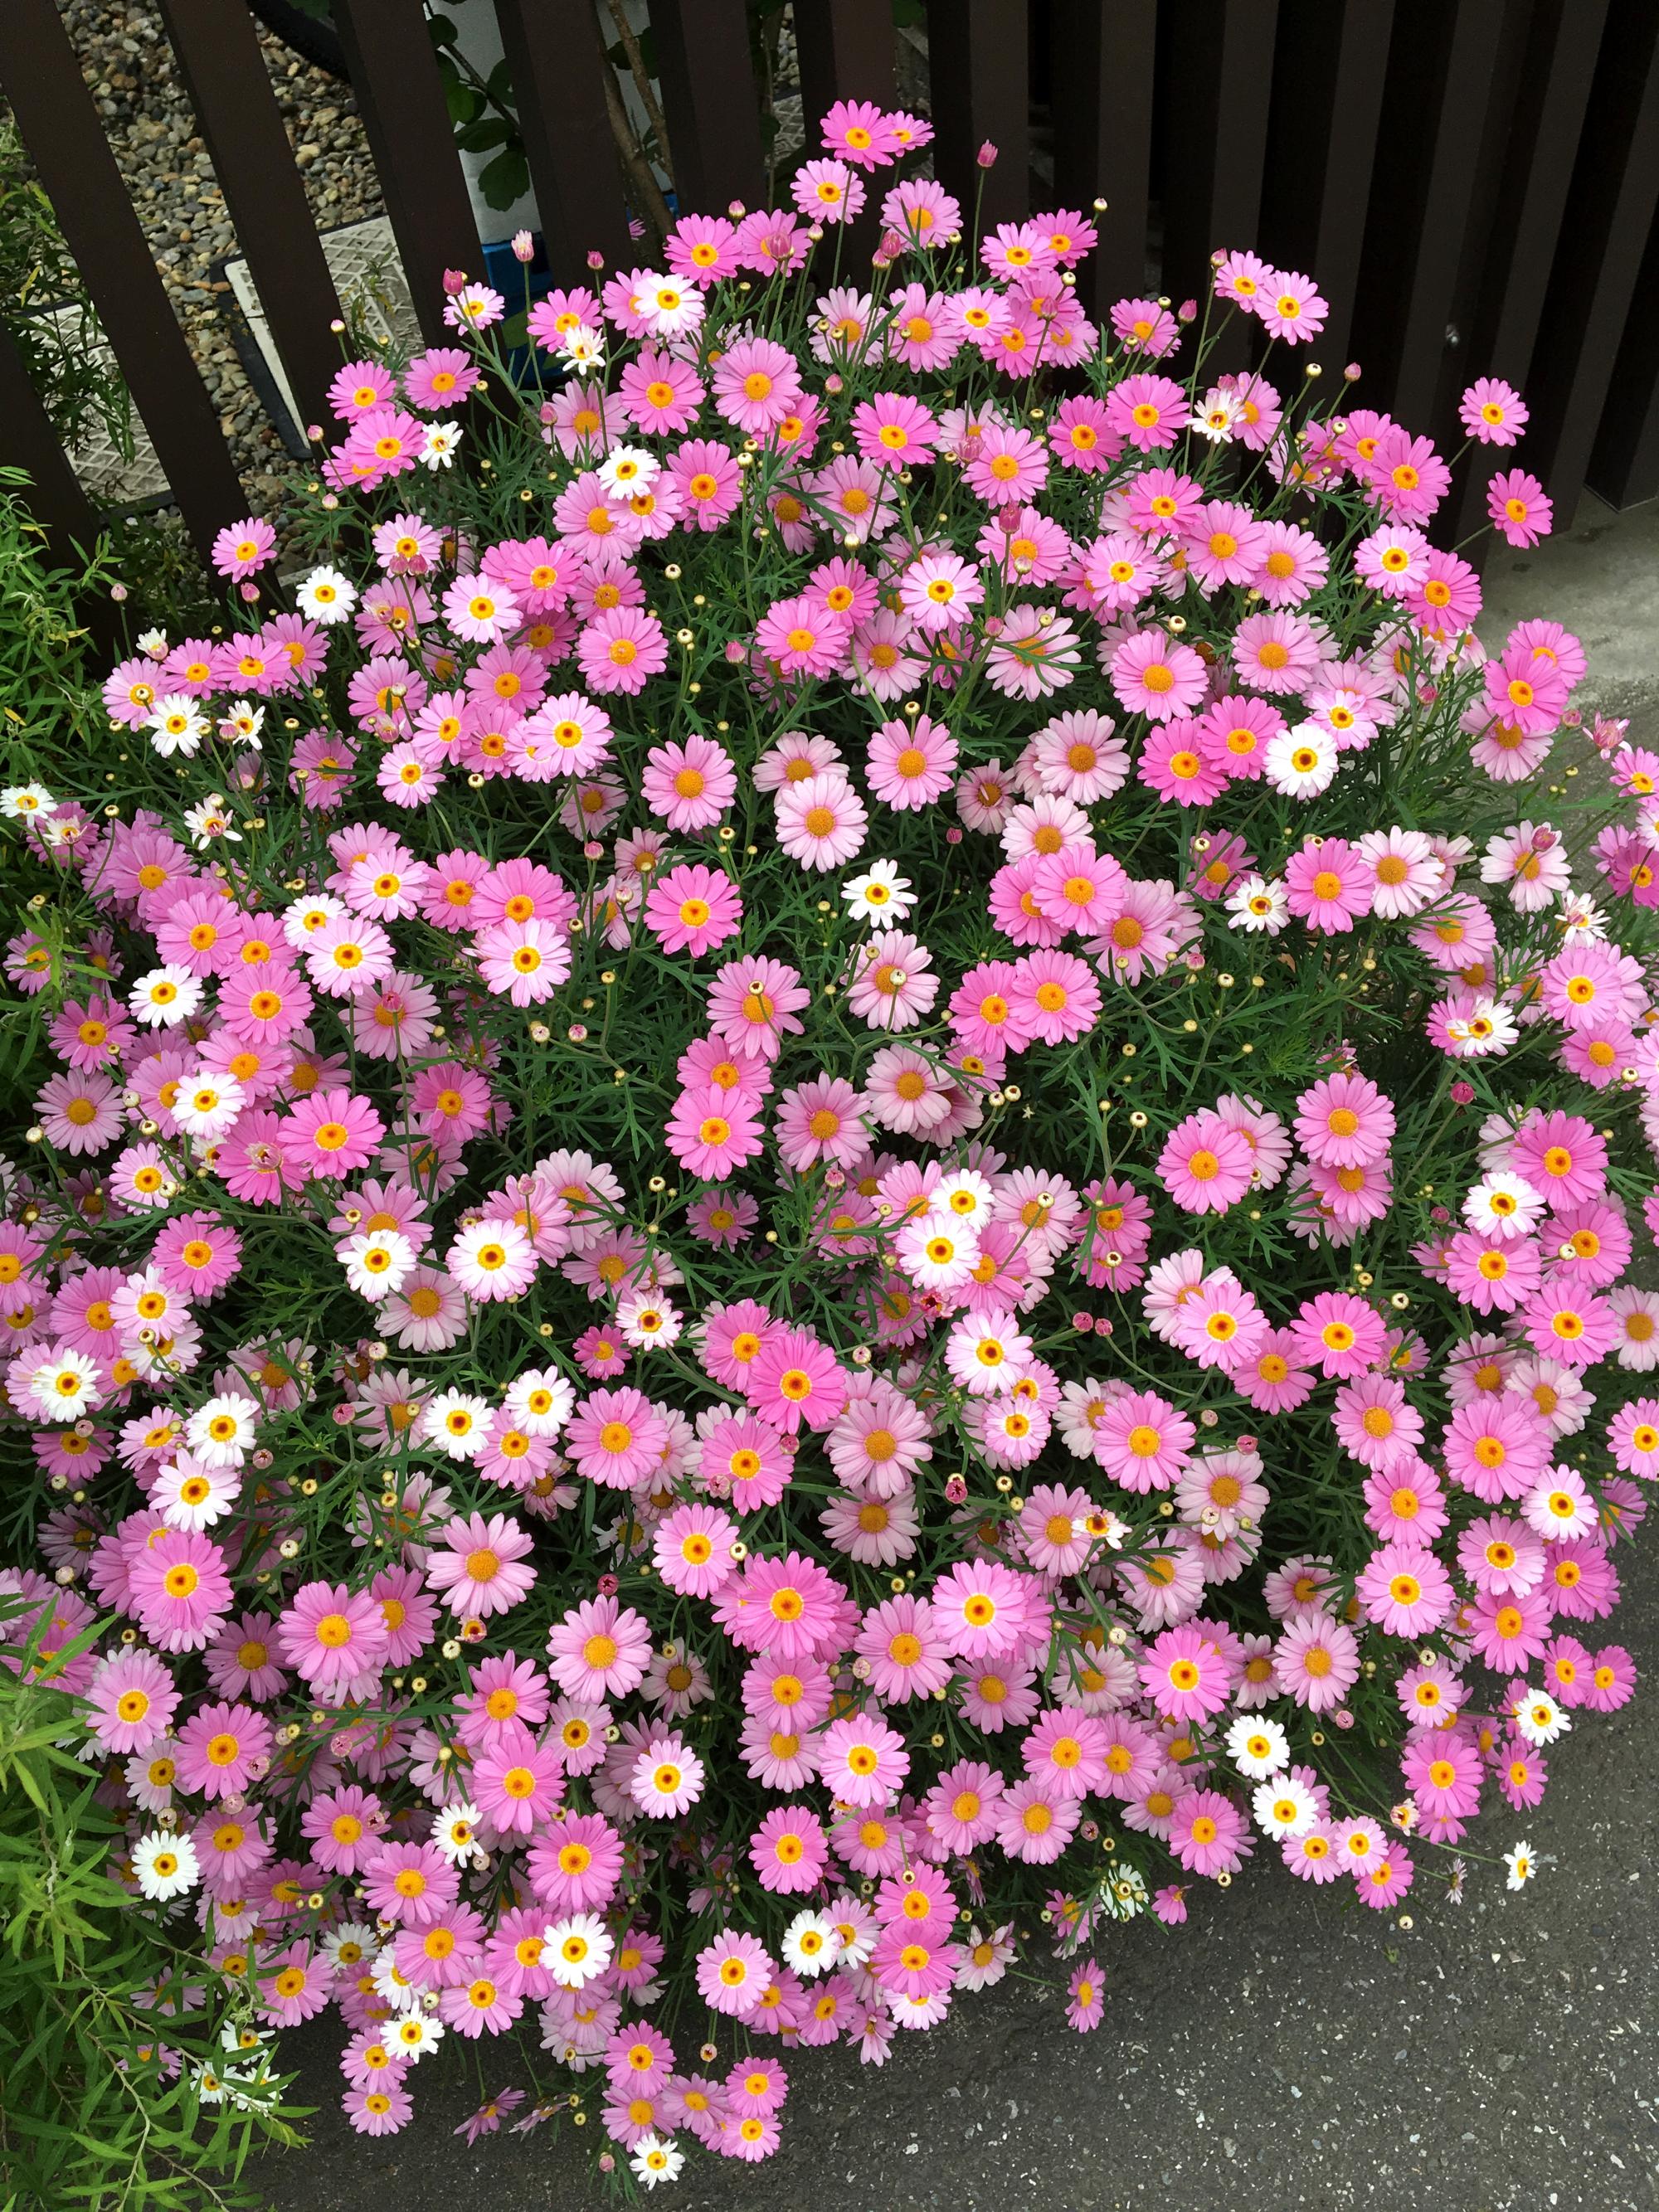 Tokyo (2017) - Flowers